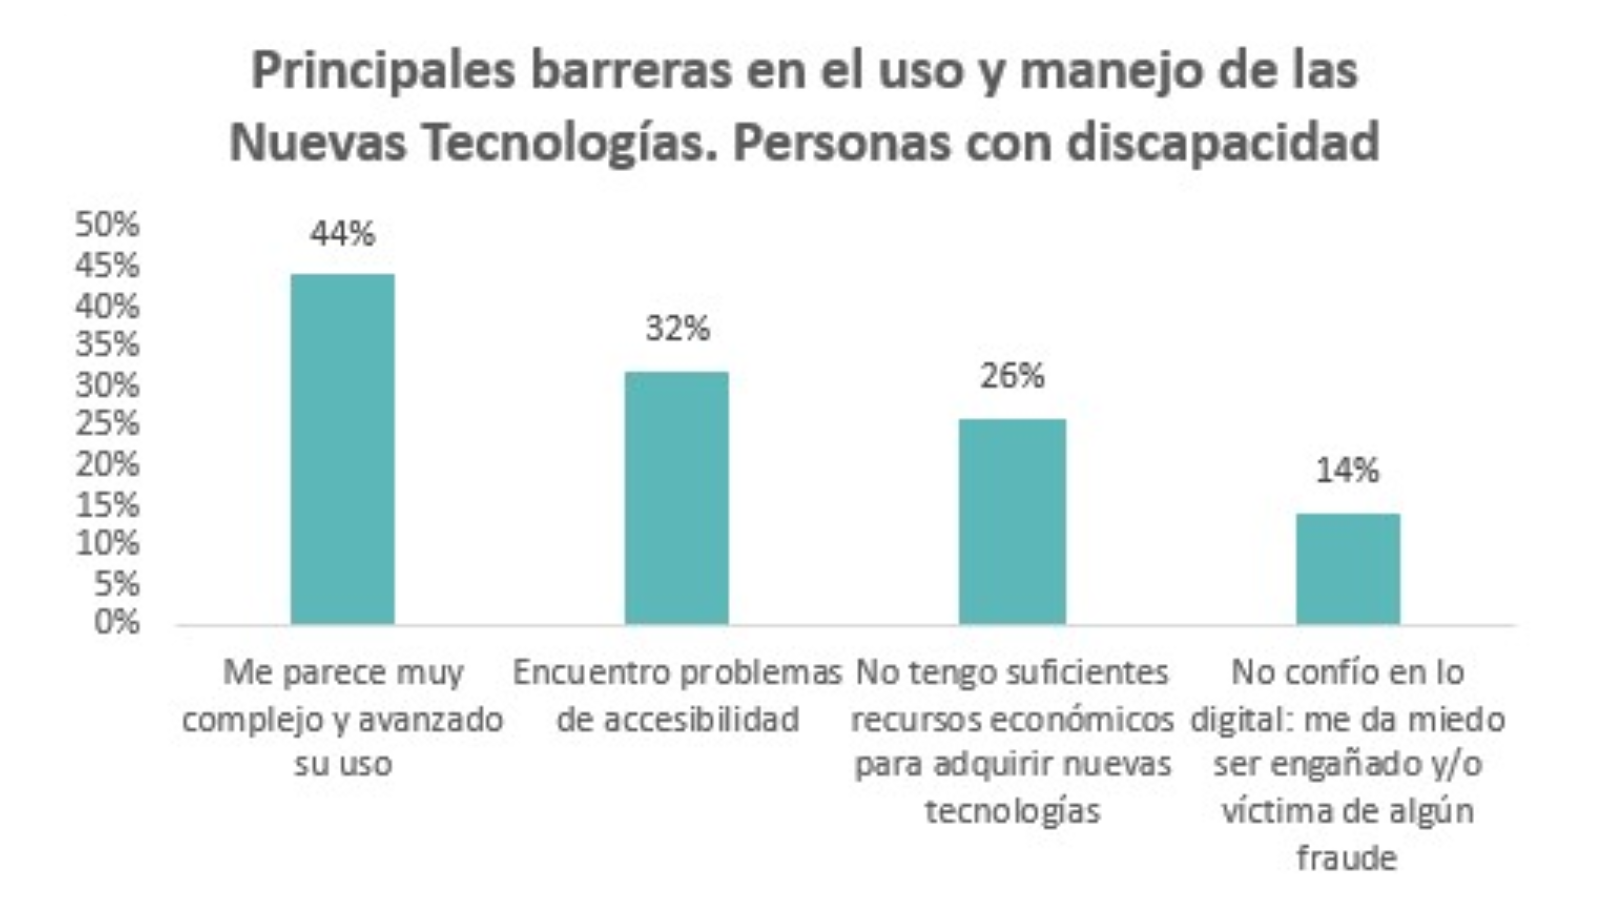 Gráfico de barras con las principales barreras en el uso de las nuevas tecnologías por parte de personas con discapacidad